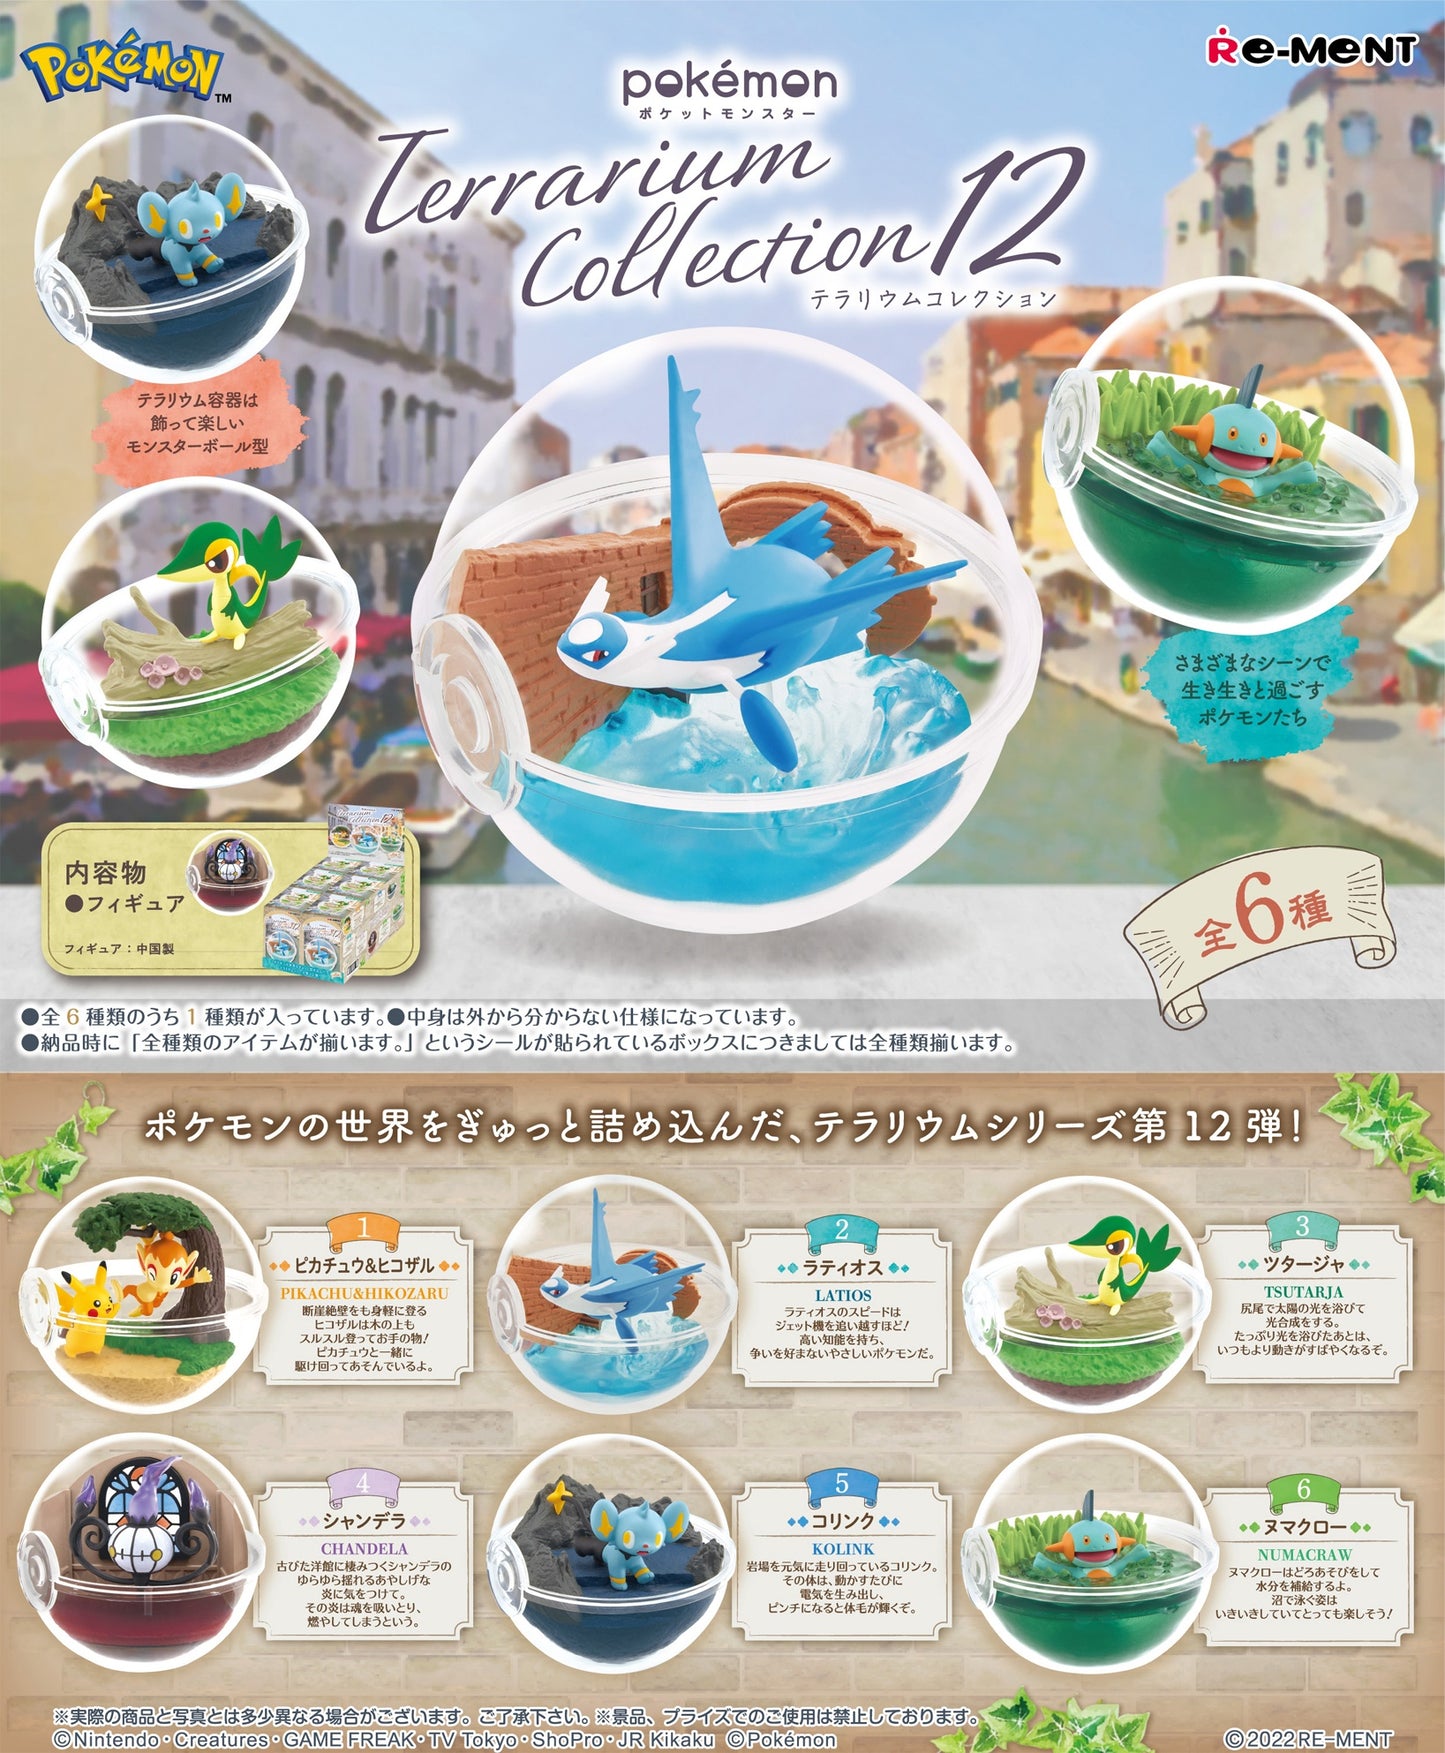 PIKACHU & CHIMCHAR - Pokemon Re-Ment Terrarium Collection 12 (NEW) Figure #1